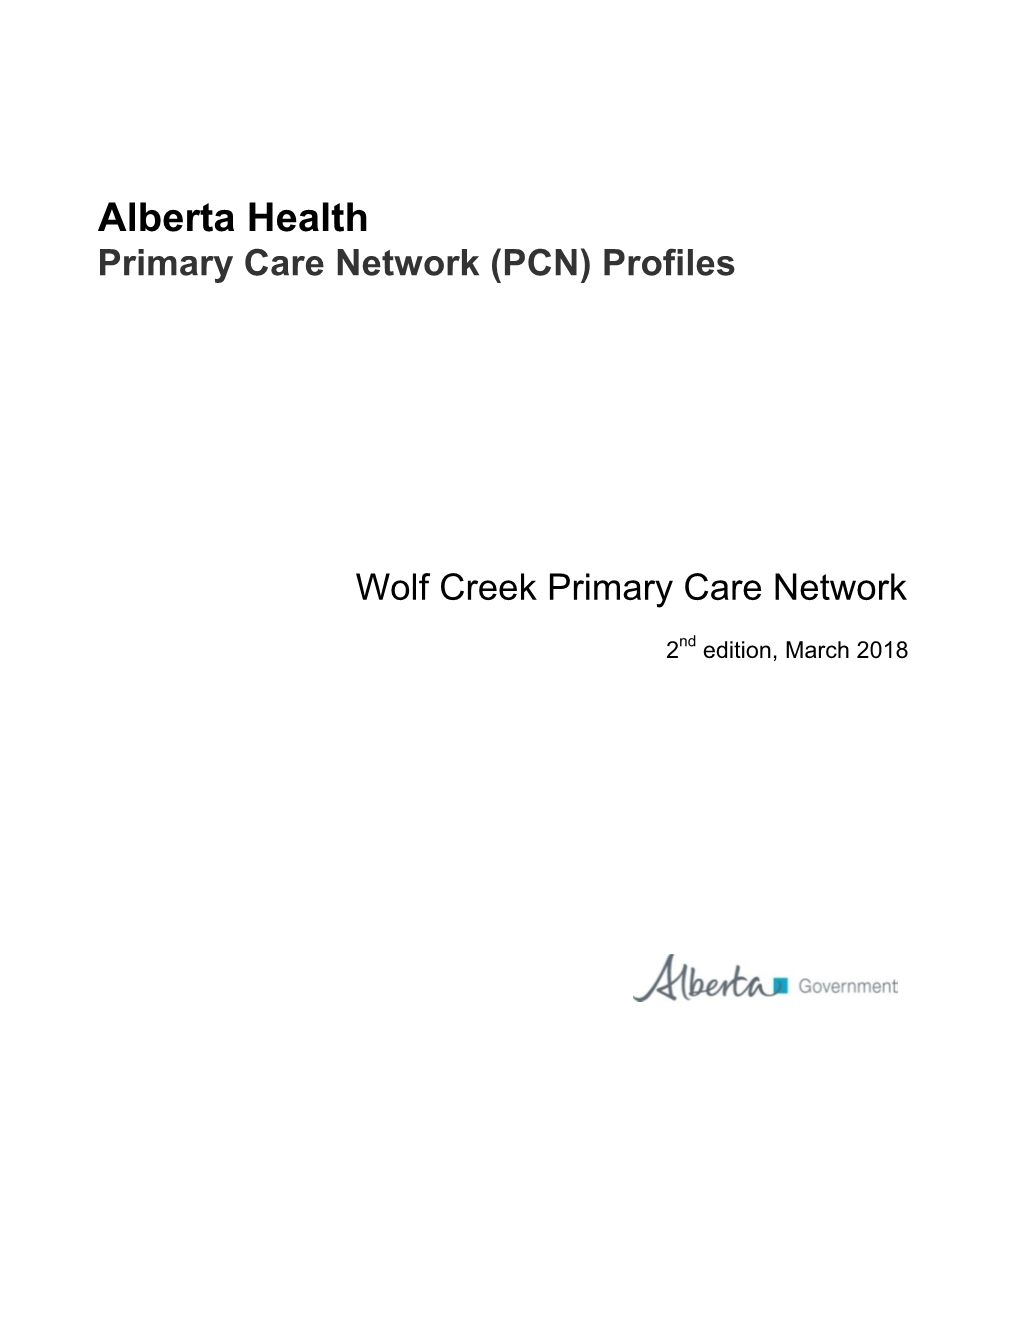 Alberta Health Primary Care Network (PCN) Profiles